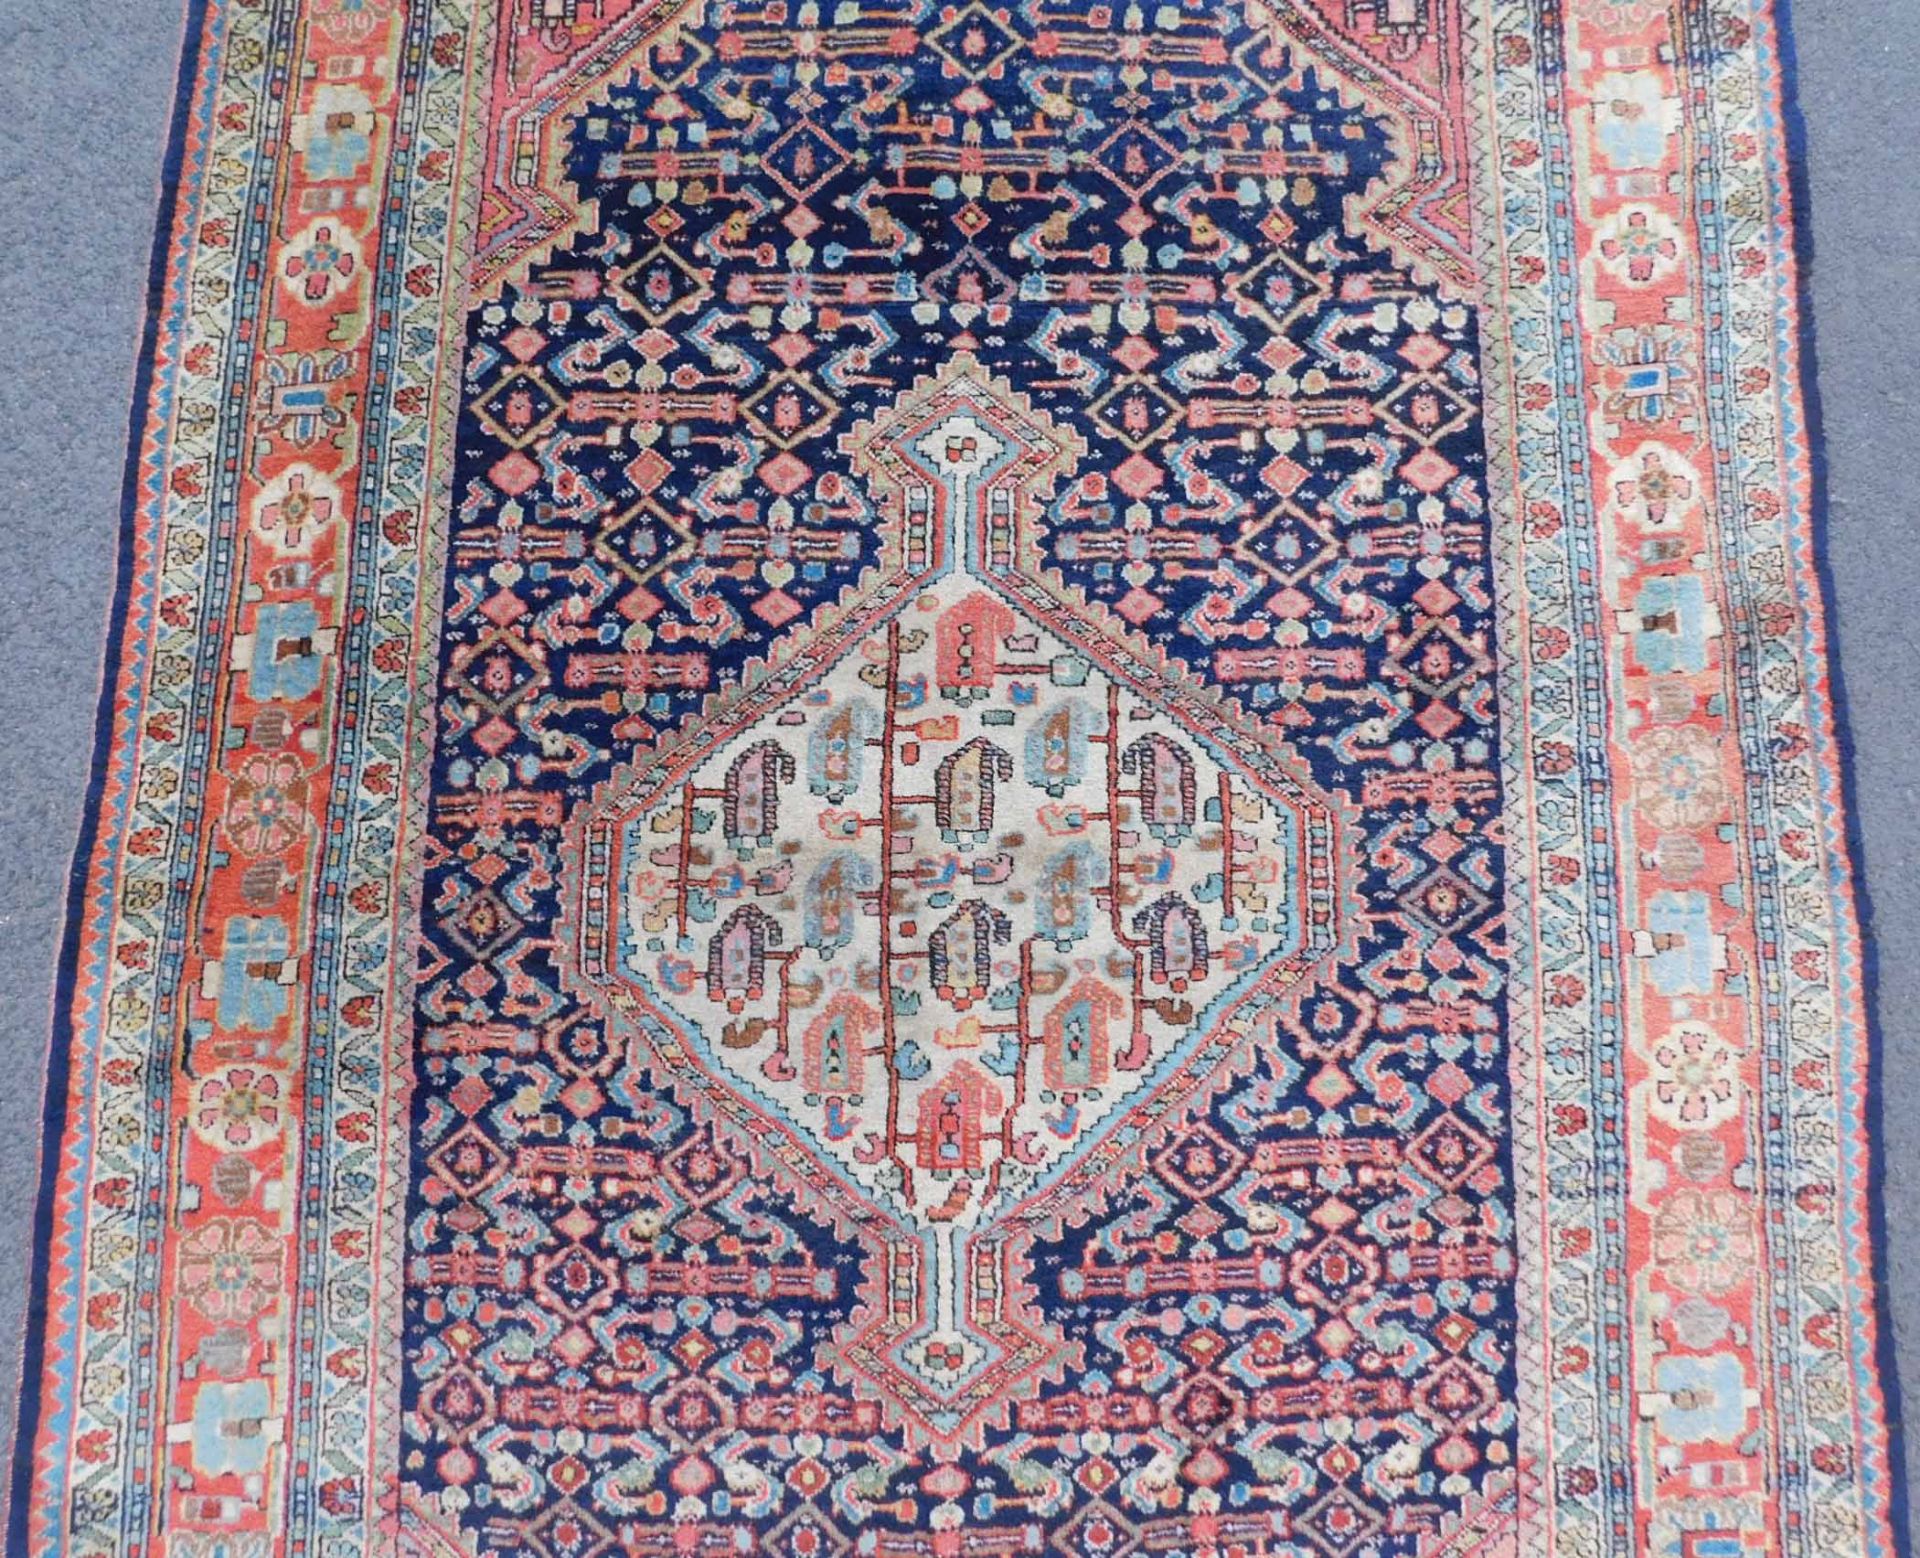 Saruk Jozan Persian carpet. Iran. Antique, around 100-130 years old. - Image 3 of 6